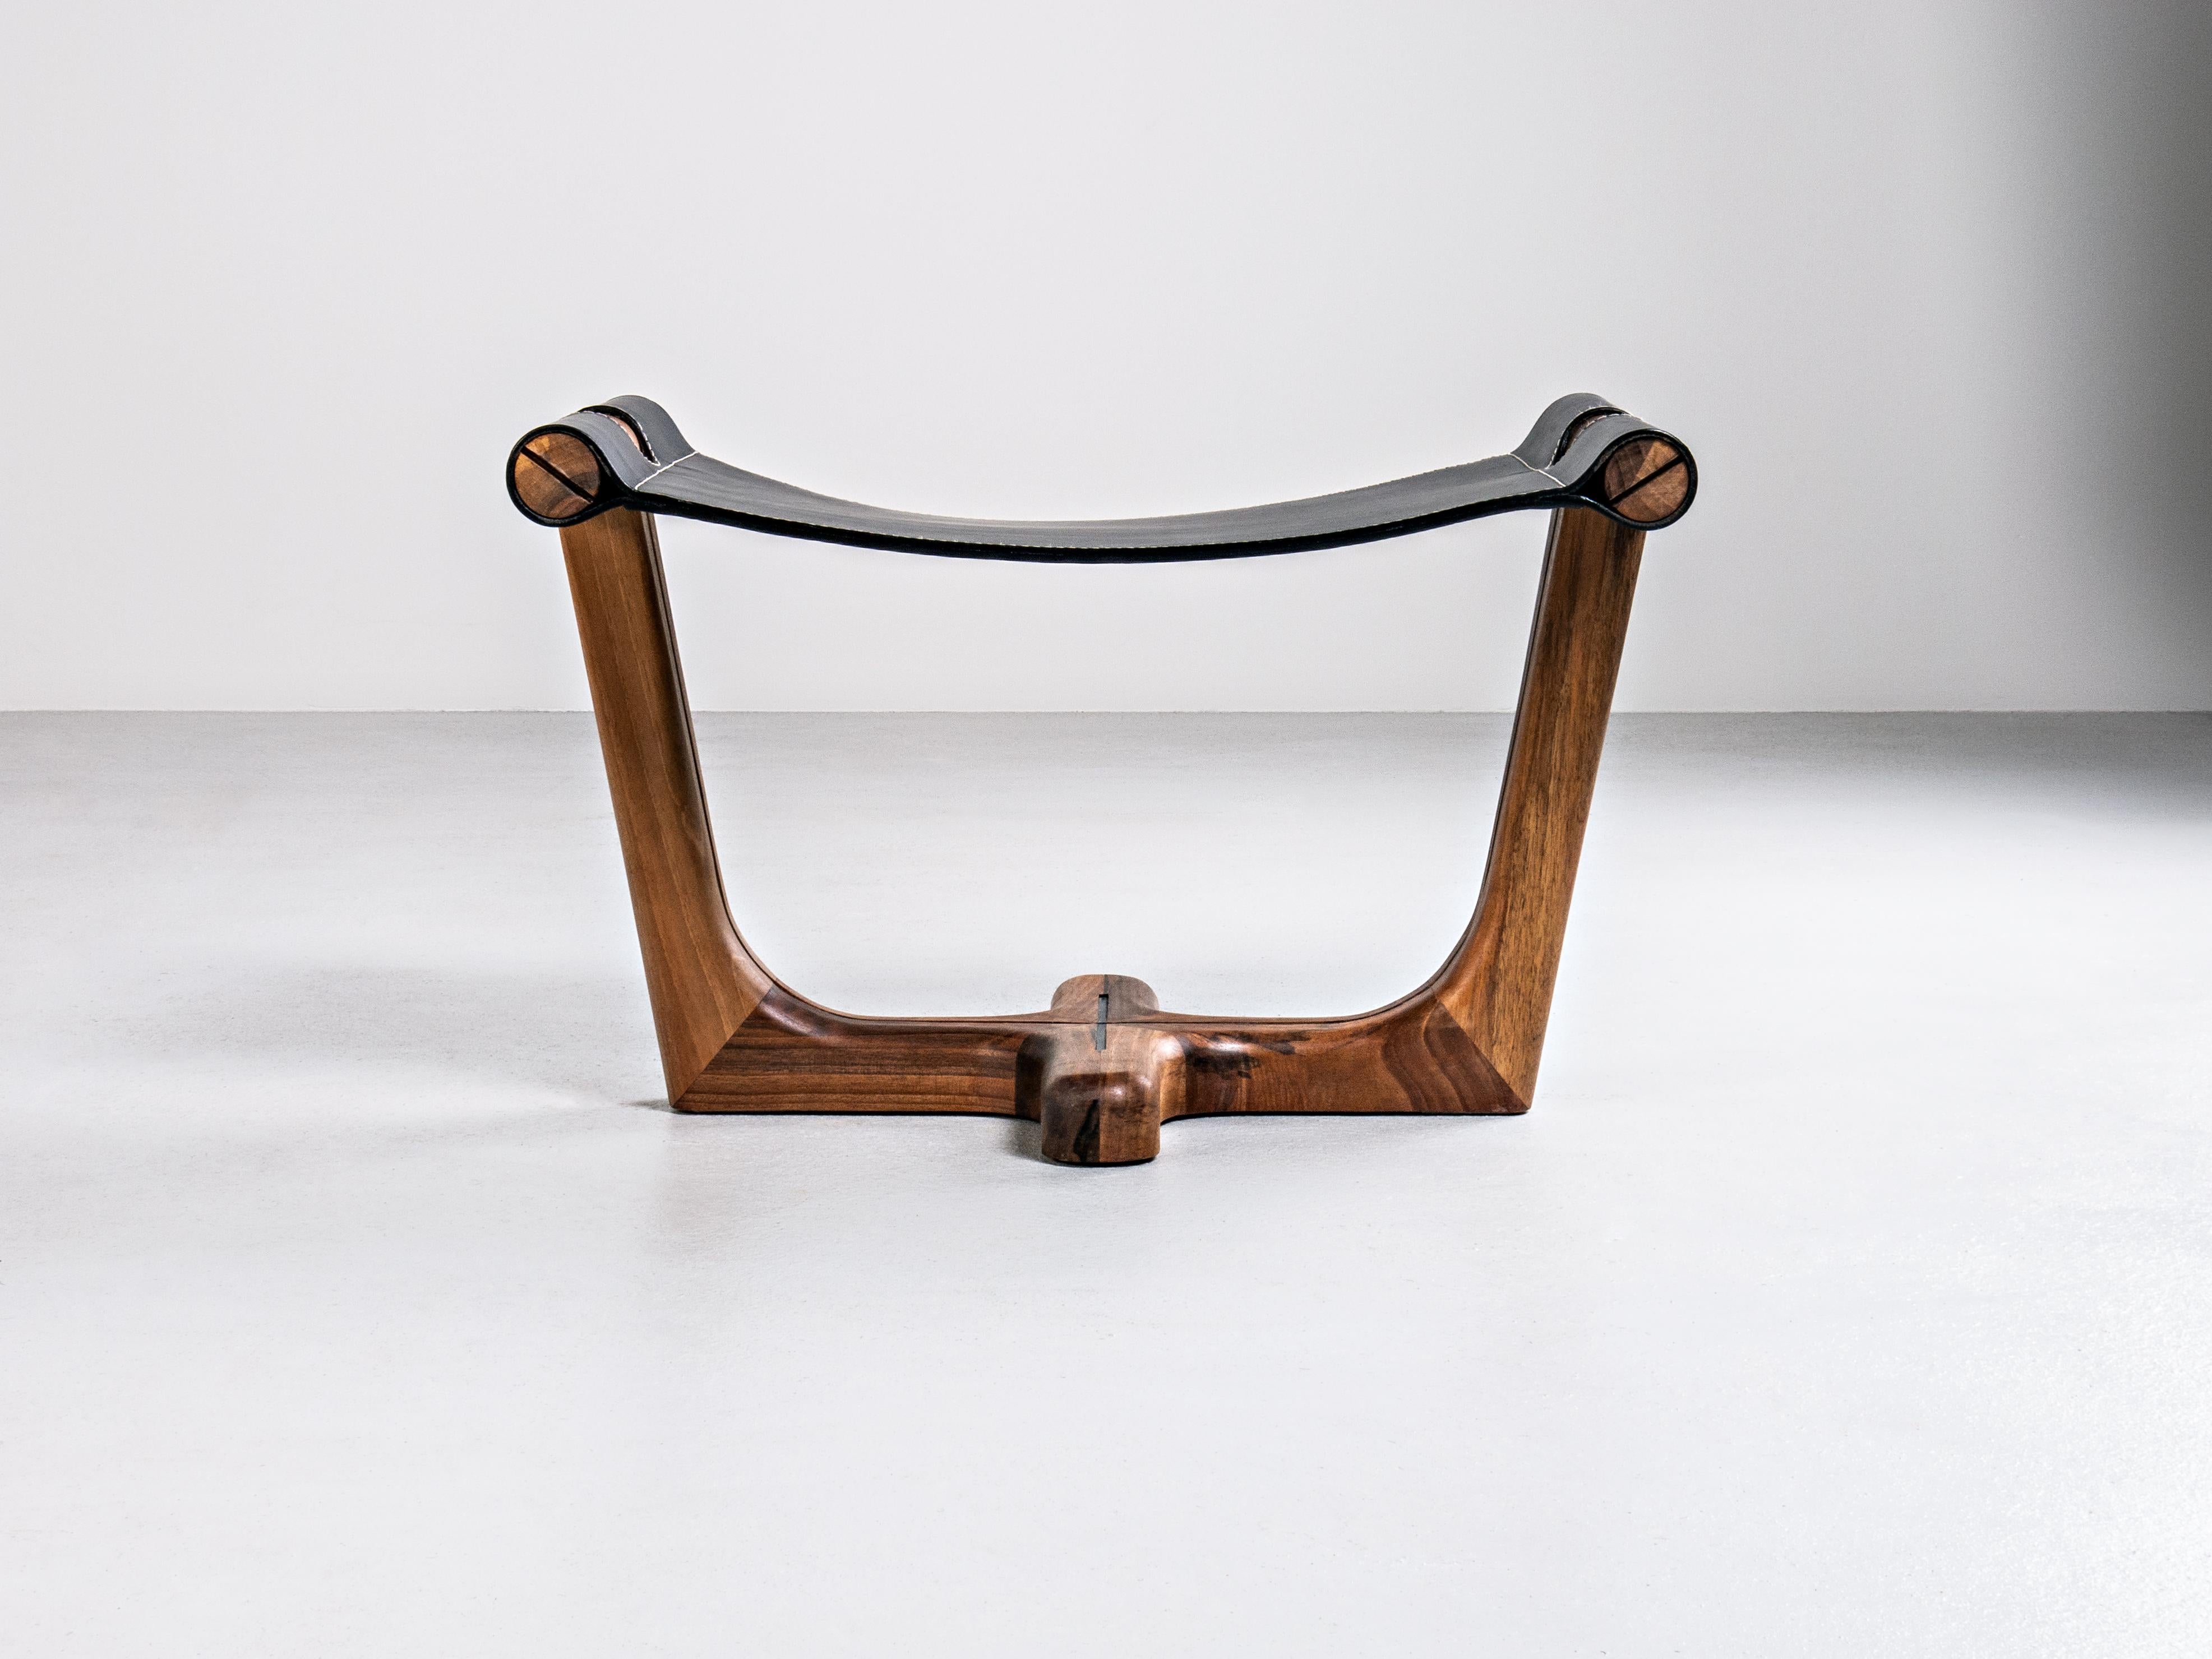 Der Armada Fußbankhocker / Tabure zeichnet sich durch sein energiegeladenes Design und seine außergewöhnliche Leichtigkeit aus, die durch die Kombination feinster MATERIALIEN erreicht wird, die den Möbelstücken dieser Collection'S den Charakter von